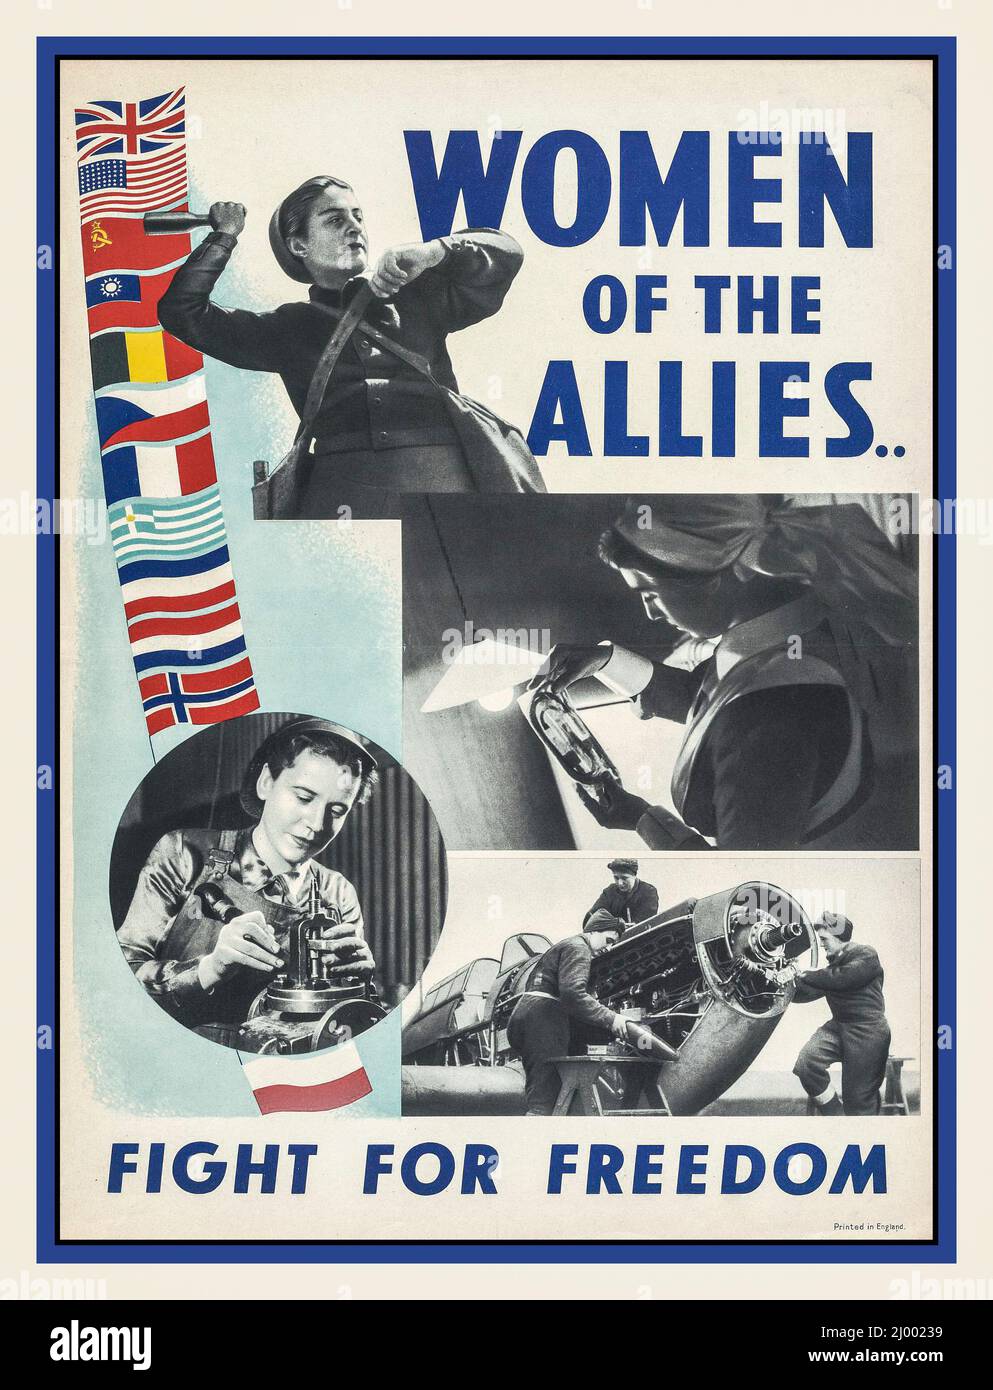 Jahrgang WW2 Rekrutierung Rekrutierung Poster Frauen in Kriegsarbeit. The war Effort at Home in the UK 'Women of the Allies Fight for Freedom', Großbritannien, 1943 Stockfoto